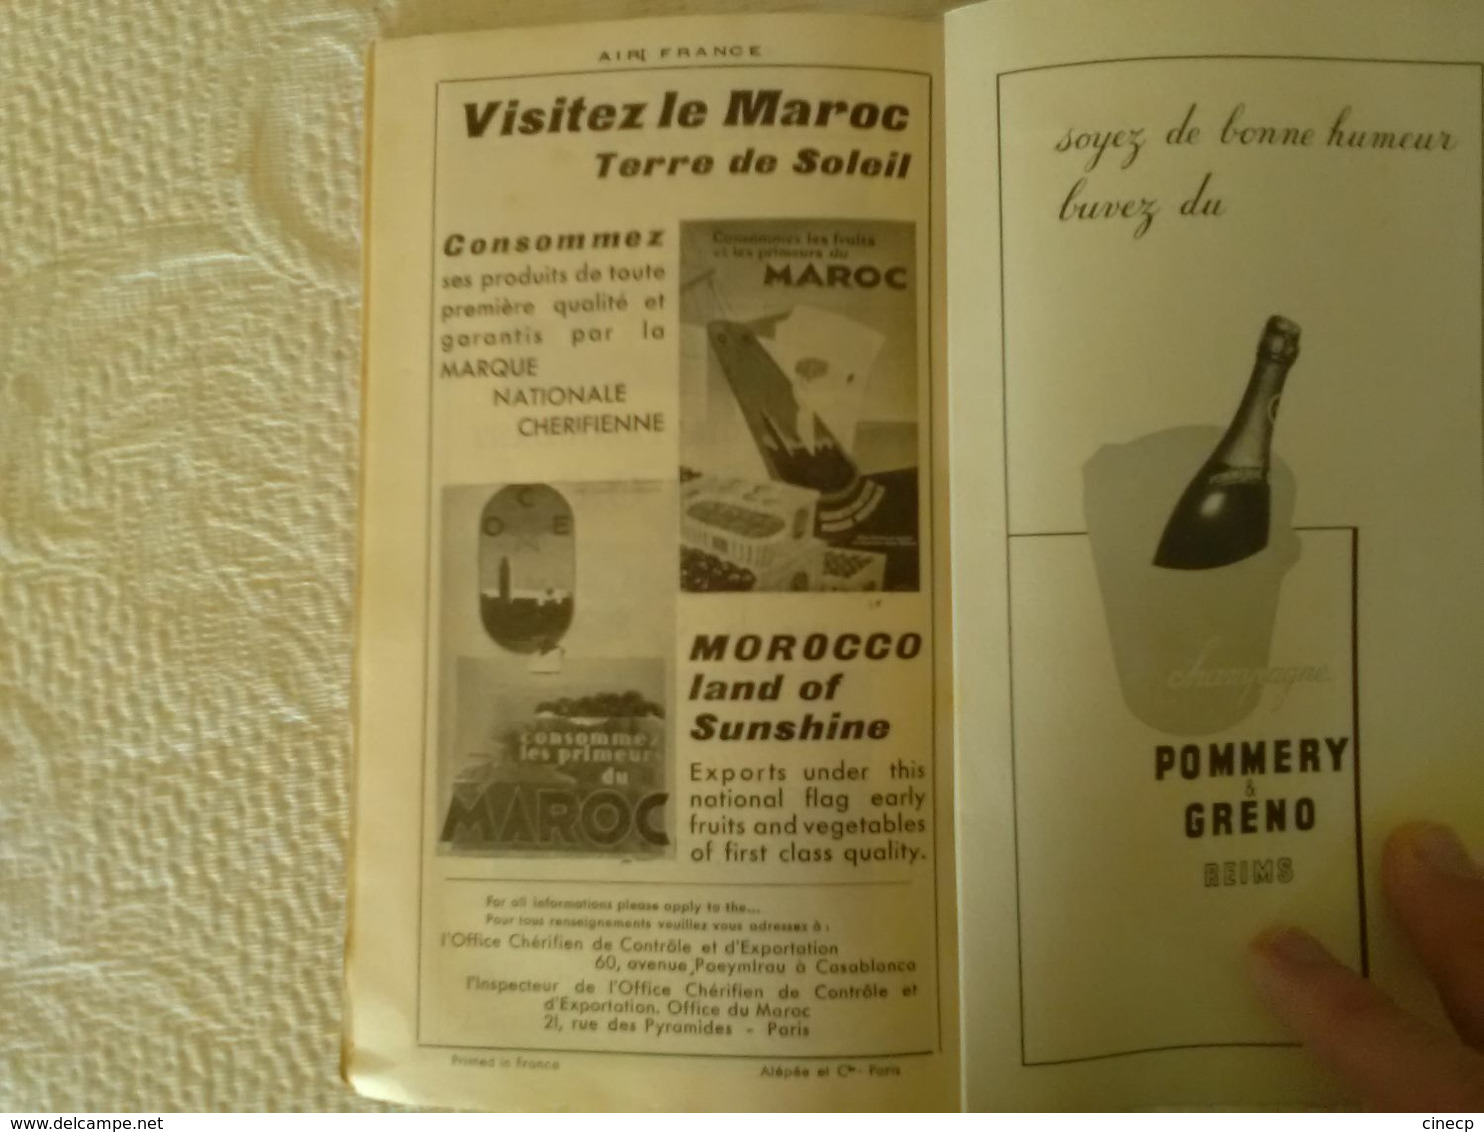 AIR FRANCE Indicateur Général Eté 1935 - 82 pages carte publicité photo avion hydravion quadrimoteur trimoteur tourisme